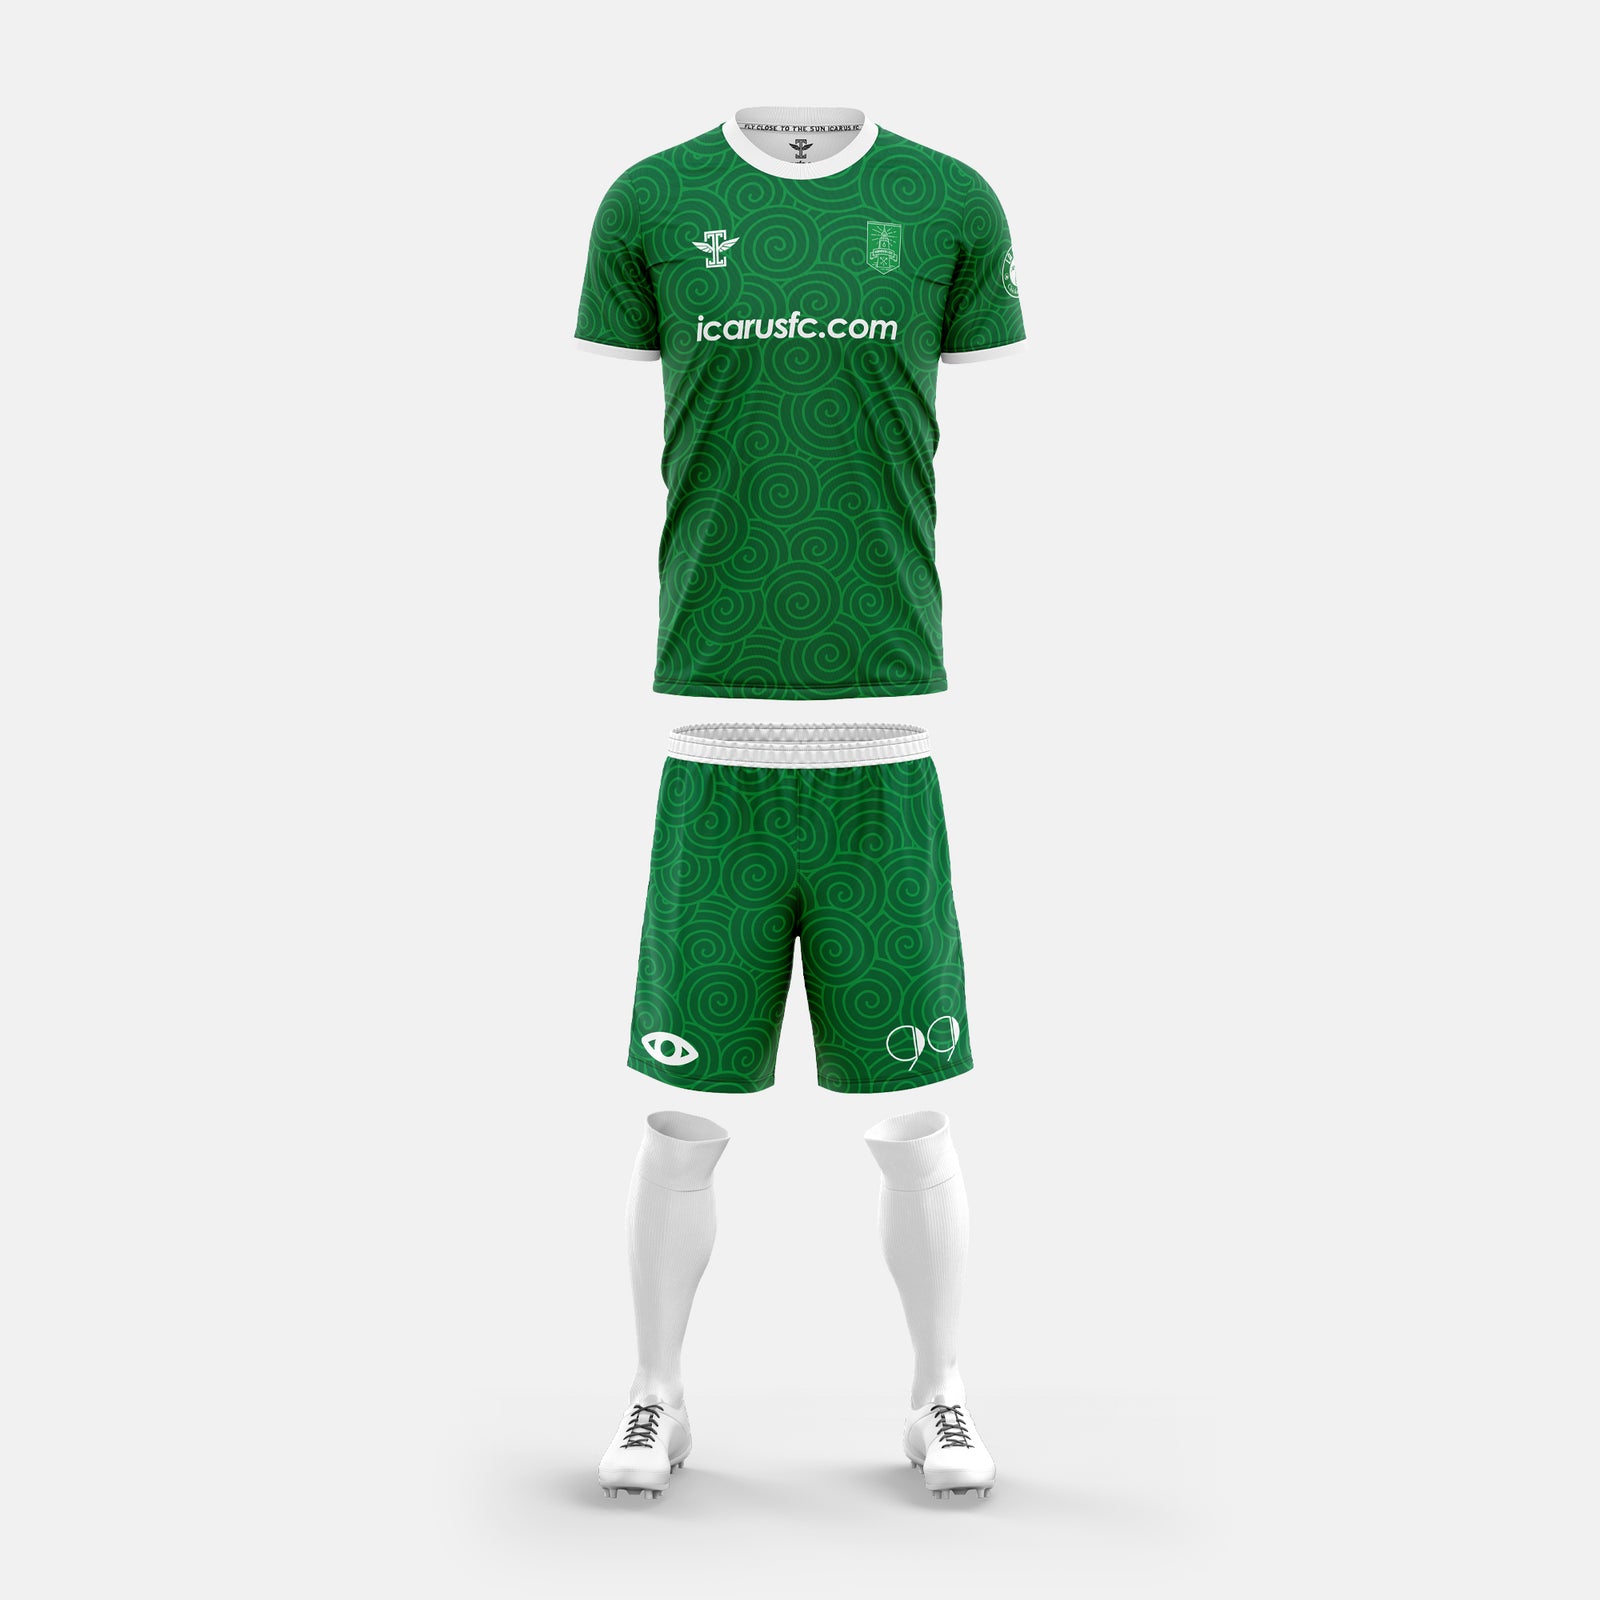 celtic home goalkeeper kit